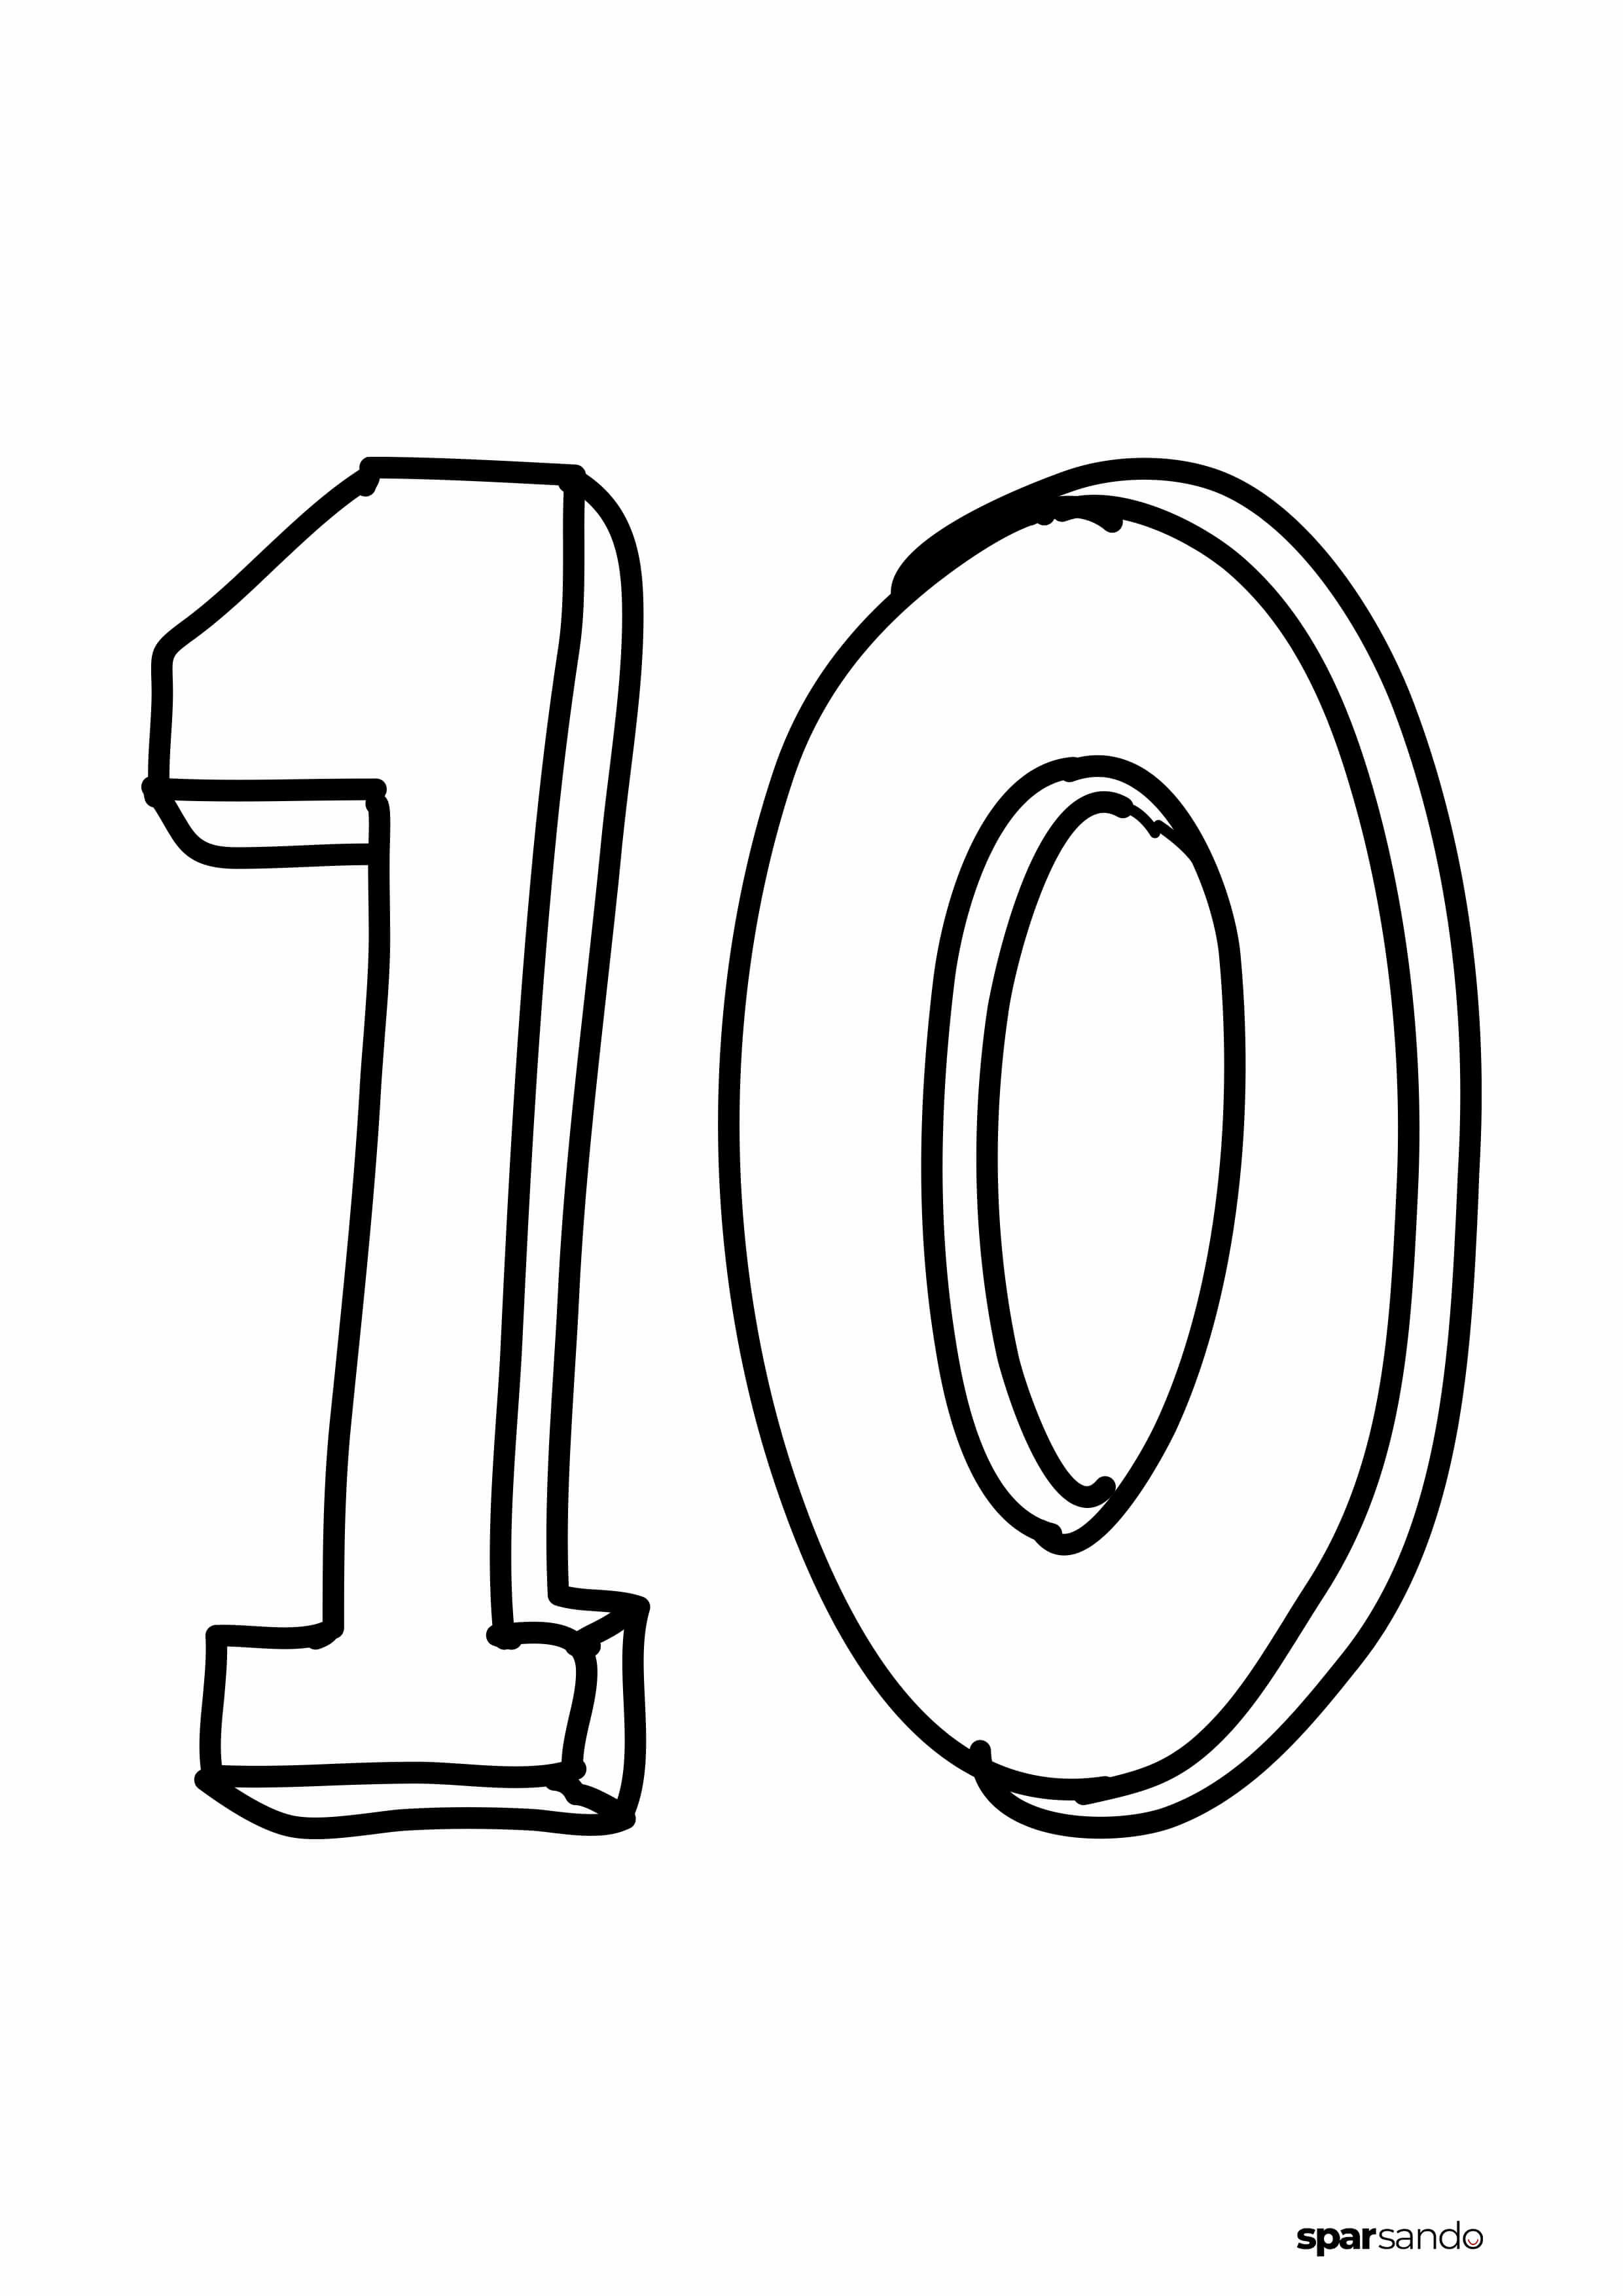 n-10